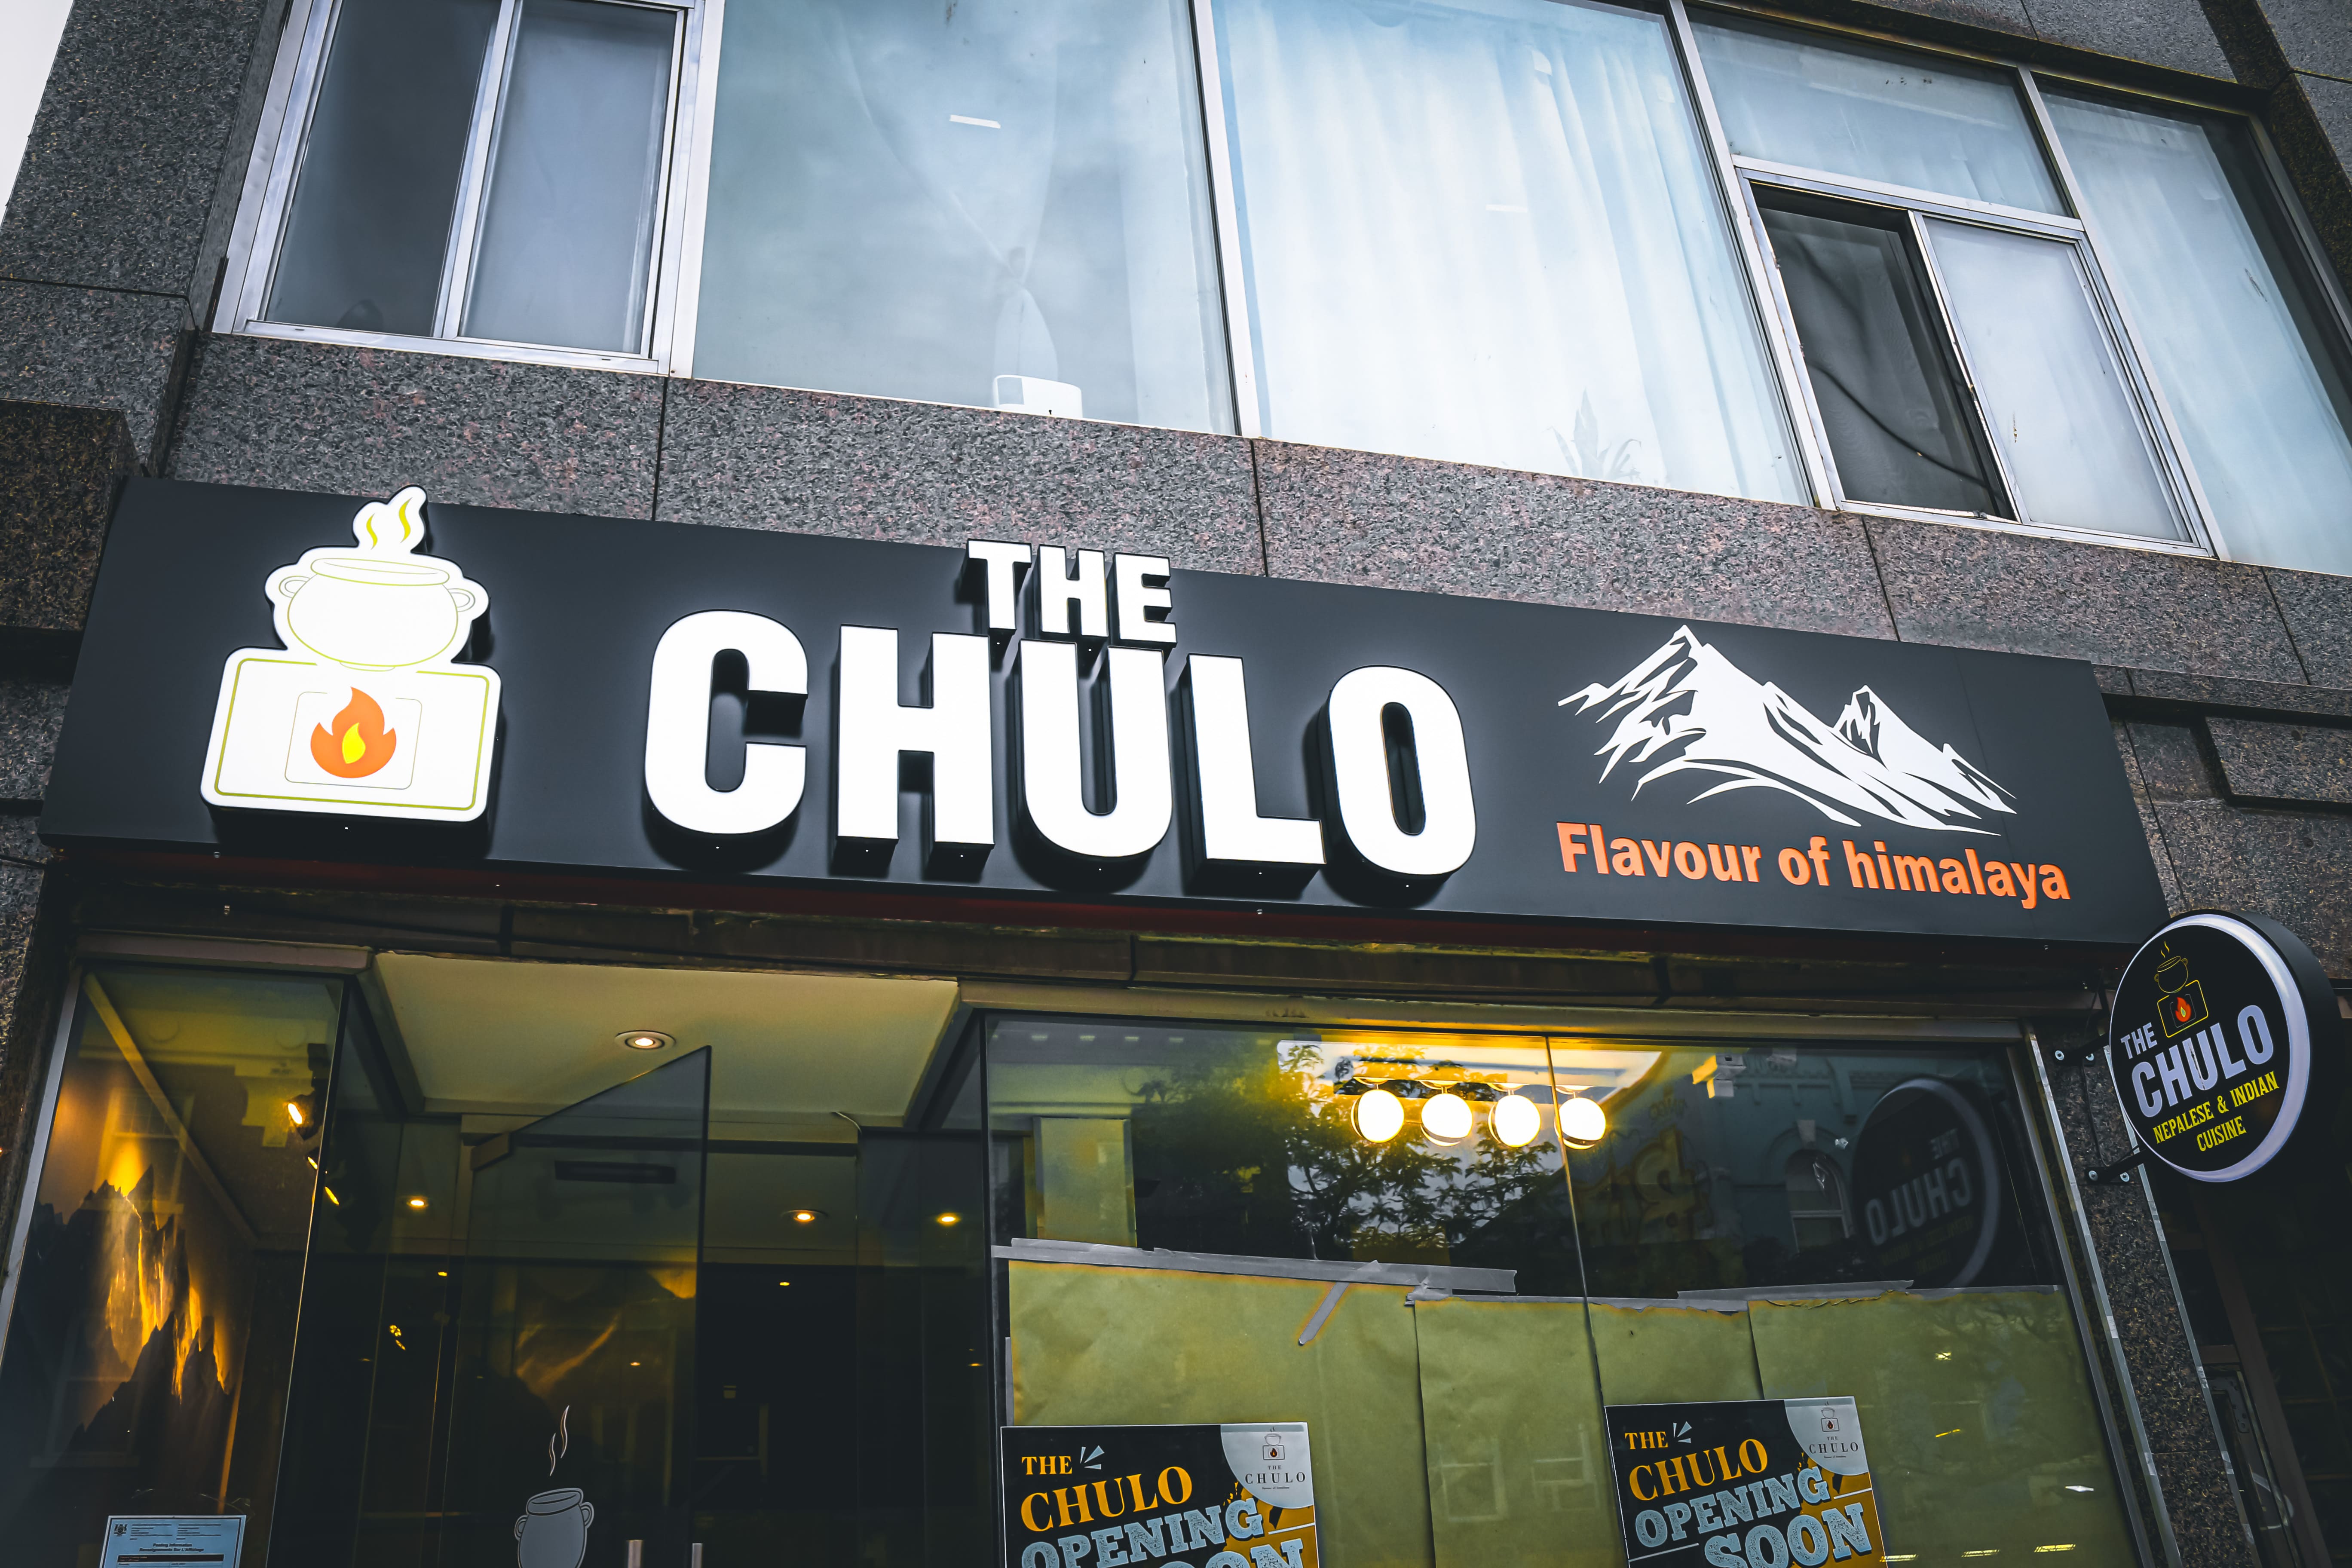 The Chulo